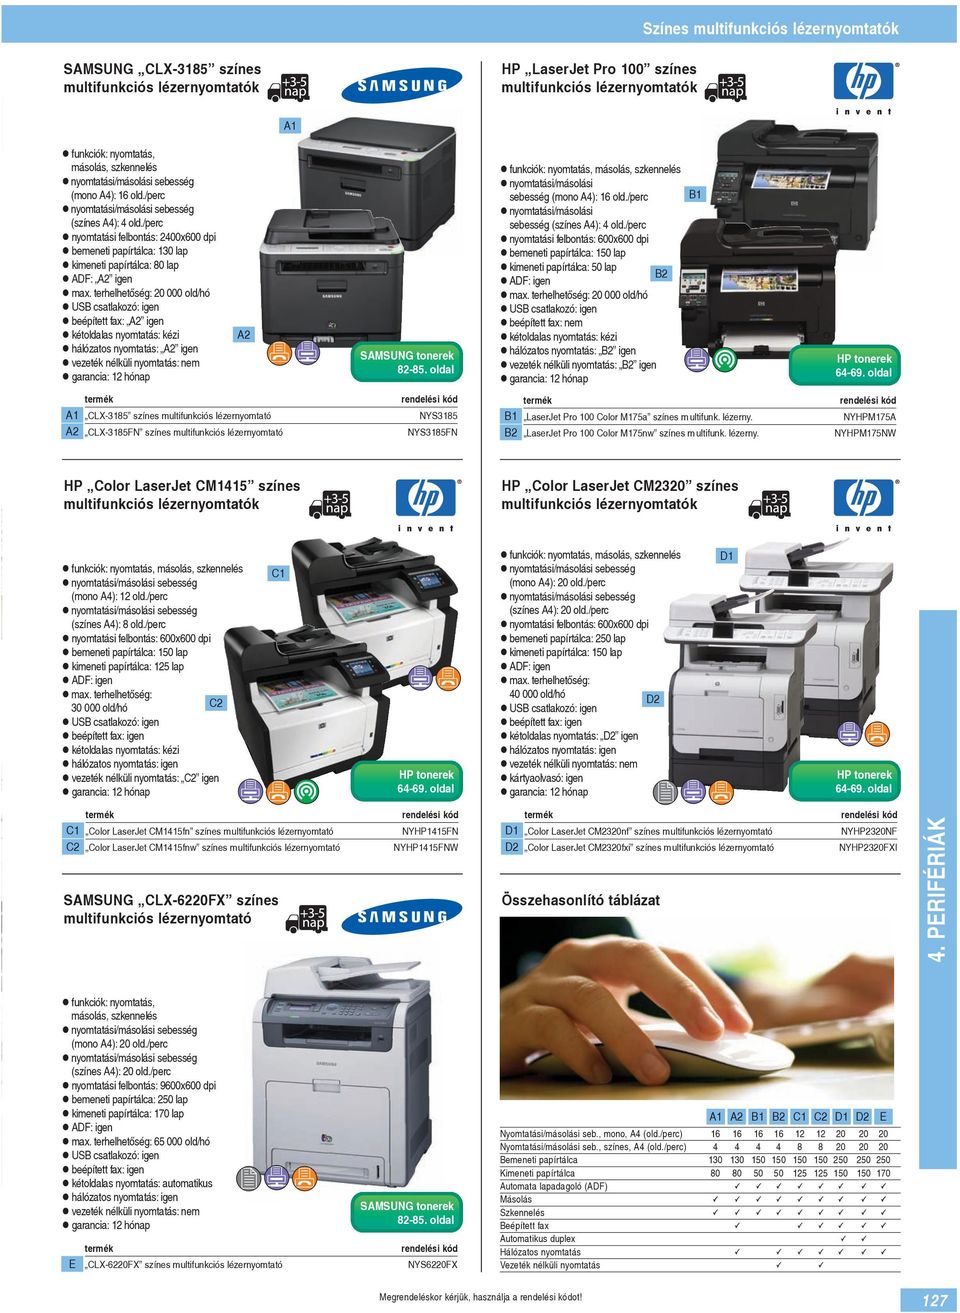 terhelhetőség: 20 000 old/hó beépített fax: A2 igen hálózatos nyomtatás: A2 igen A2 SAMSUNG tonerek 82-85. oldal, másolás, szkennelés nyomtatási/másolási sebesség (mono A4): 16 old.